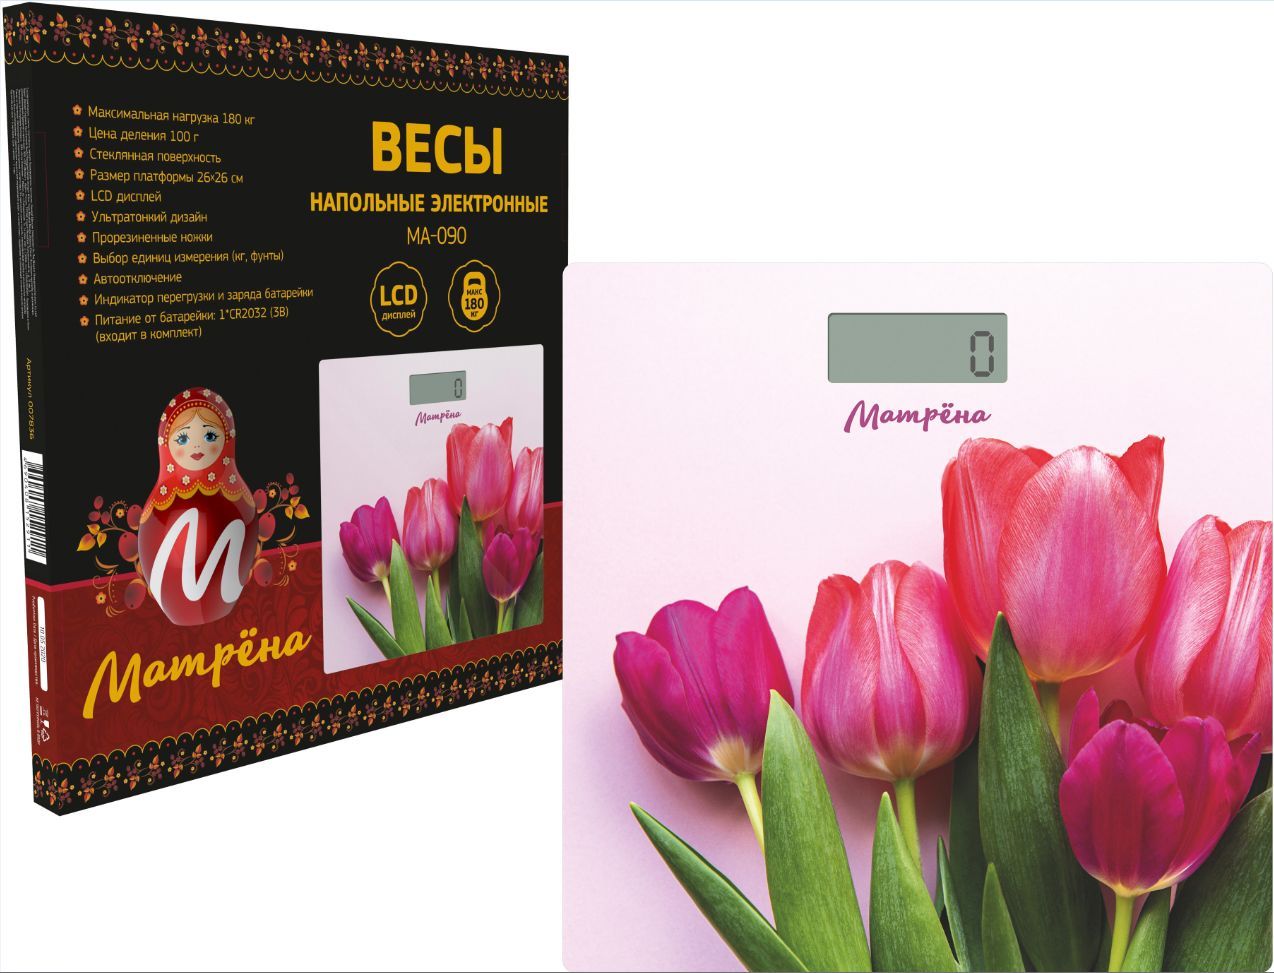 Весы МАТРЁНА МА-090 тюльпаны (007835)